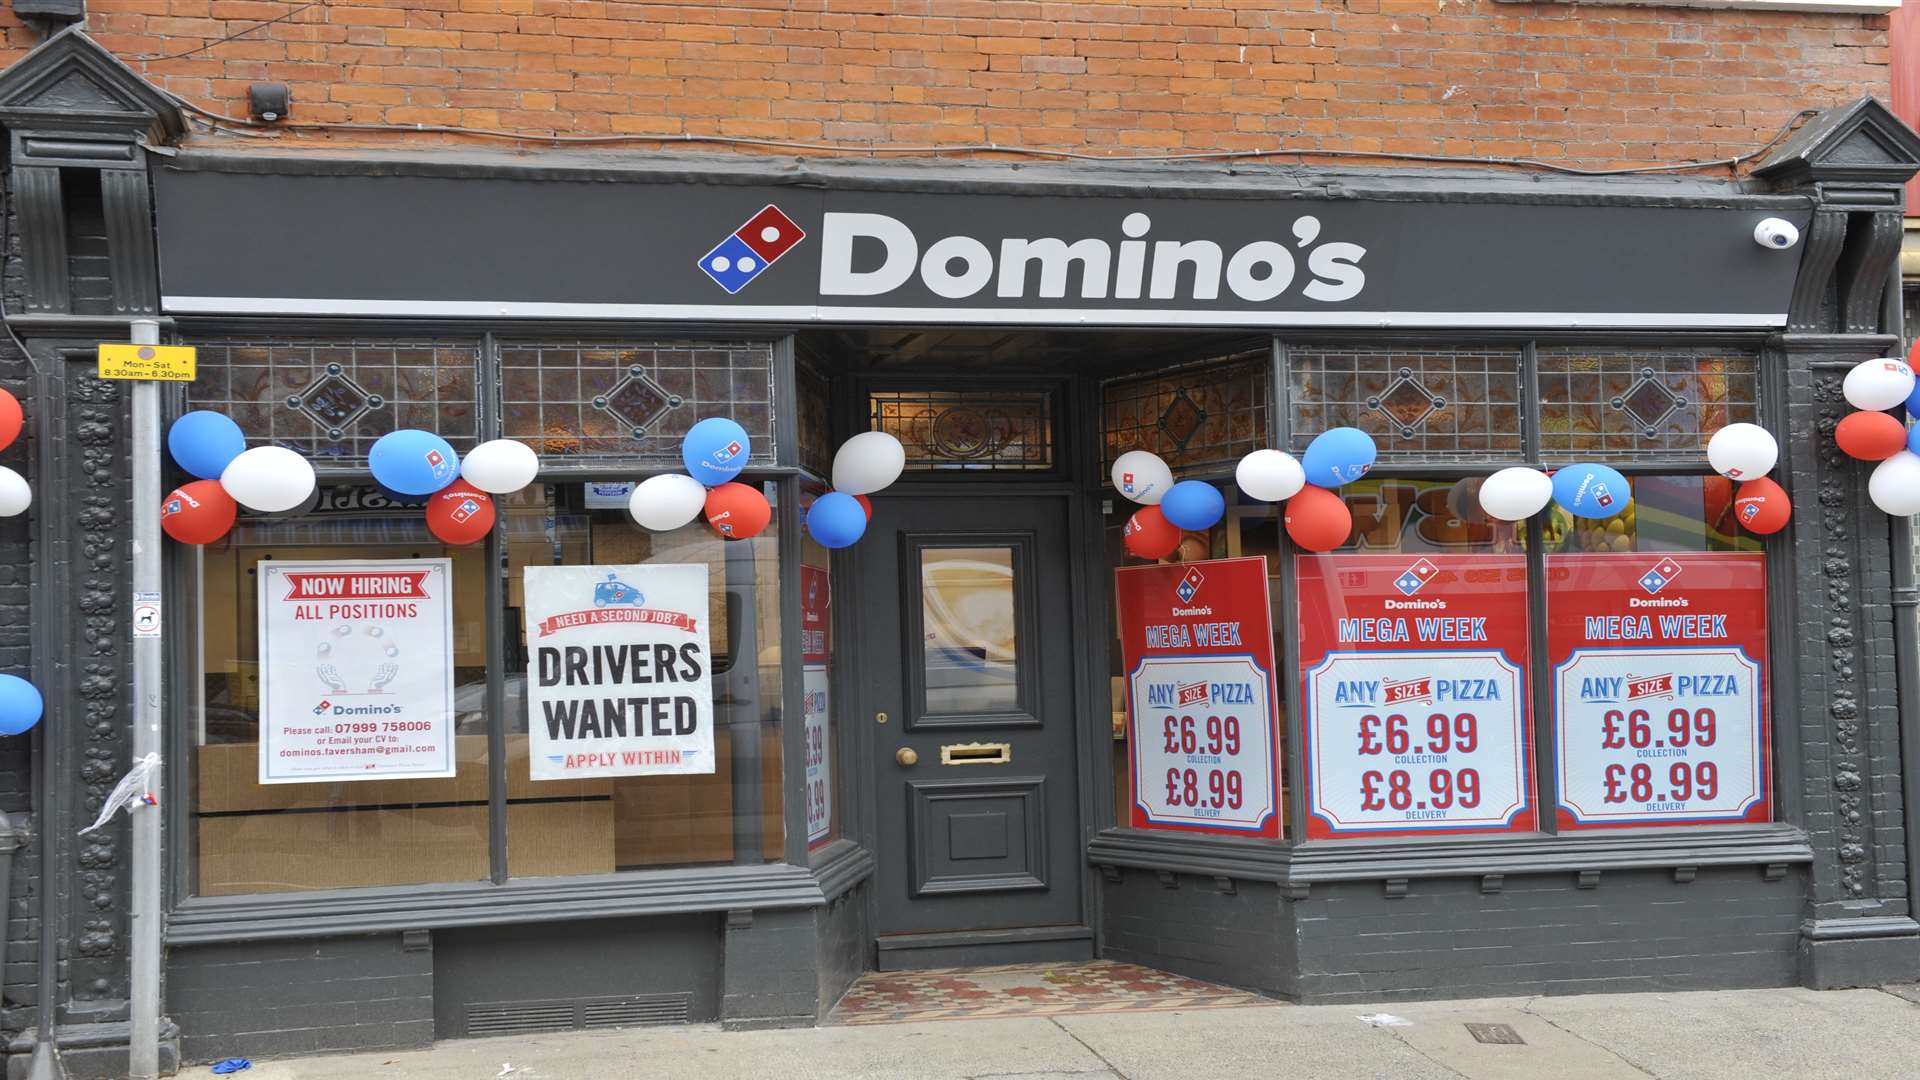 Domino's Pizza in Preston Street, where the attack took place.